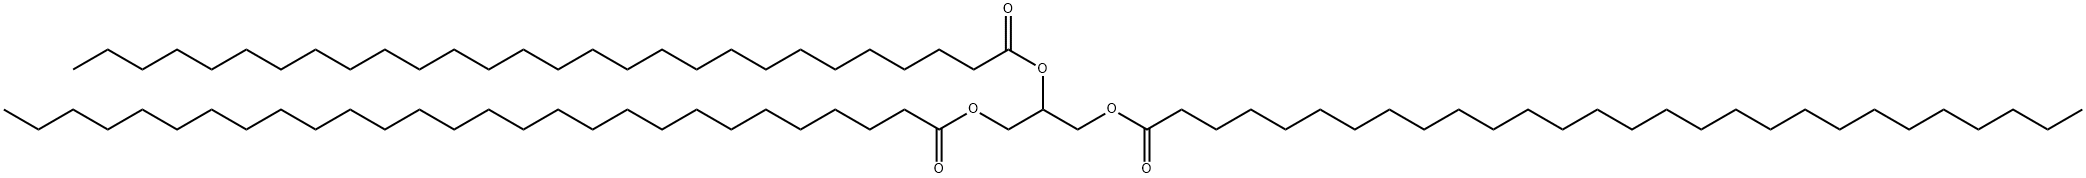 propane-1,2,3-triyl trioctacosanoate Struktur